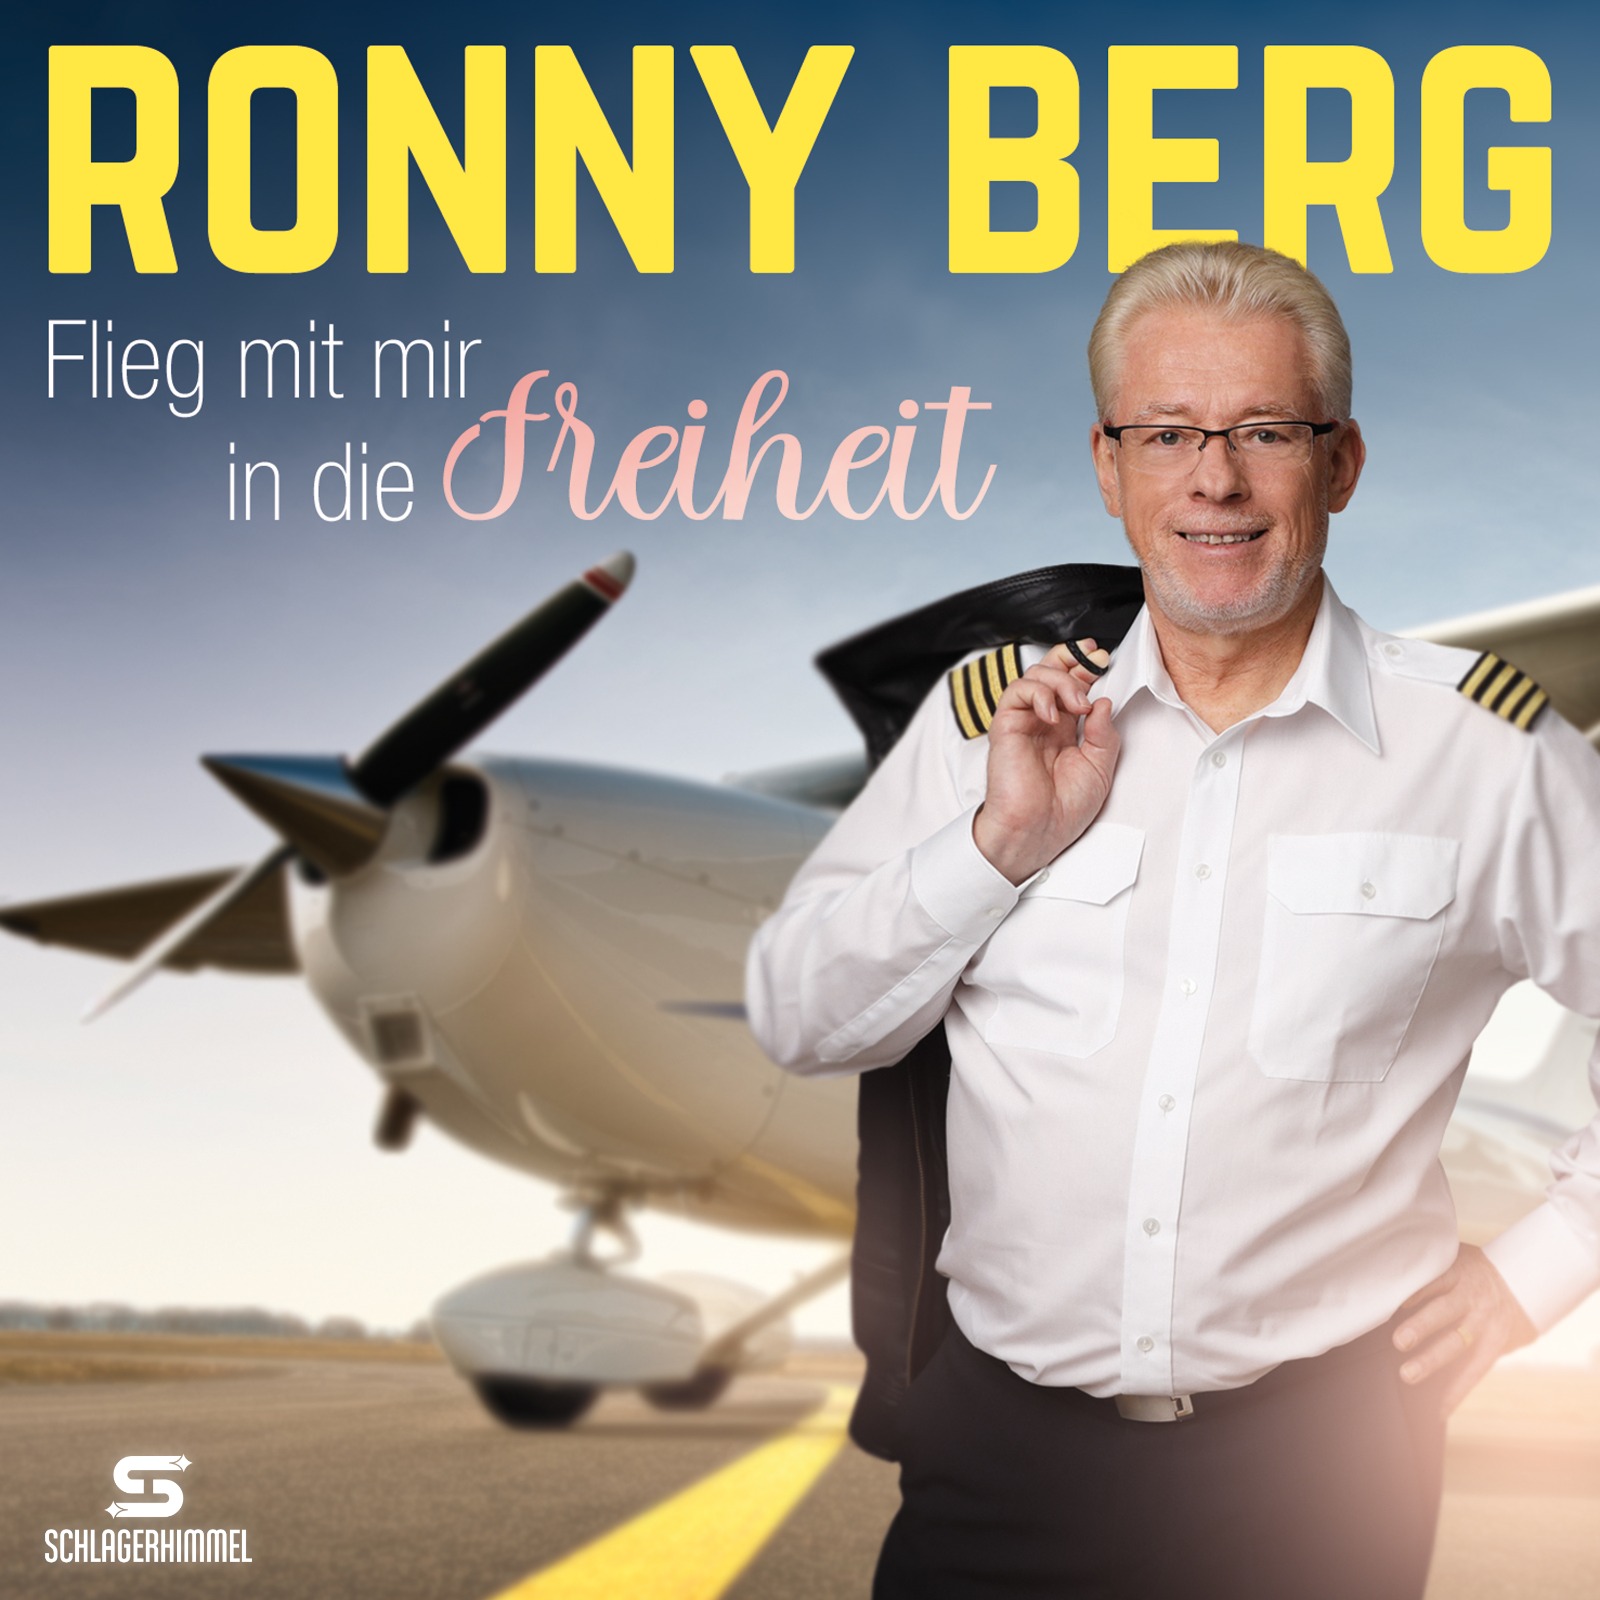 Ronny Berg - flieg mit mir in die Freiheit - Cover.jpg